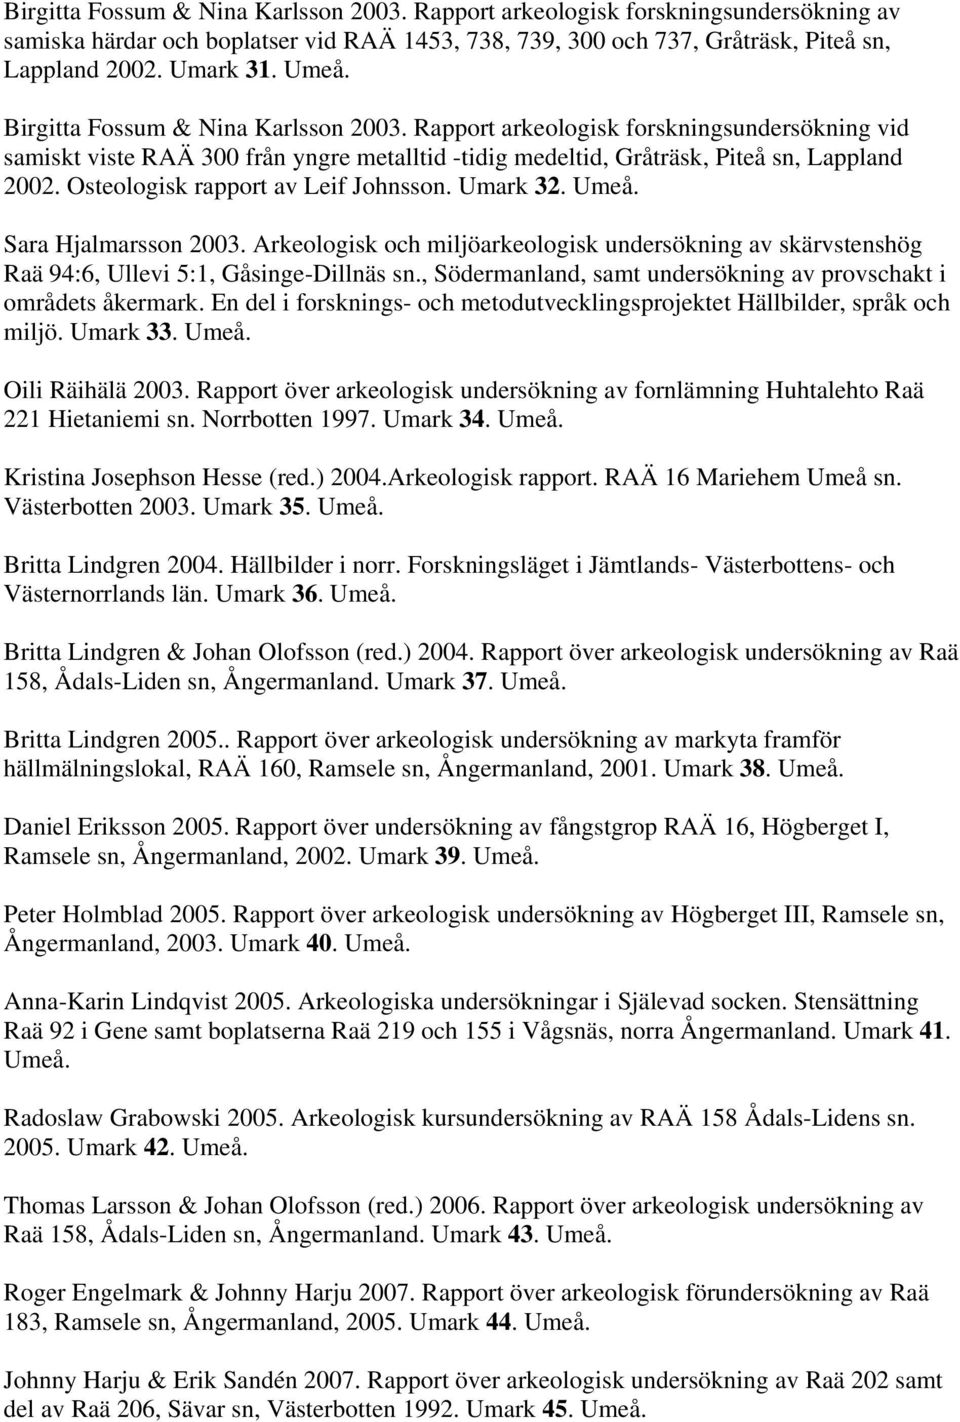 Osteologisk rapport av Leif Johnsson. Umark 32. Umeå. Sara Hjalmarsson 2003. Arkeologisk och miljöarkeologisk undersökning av skärvstenshög Raä 94:6, Ullevi 5:1, Gåsinge-Dillnäs sn.